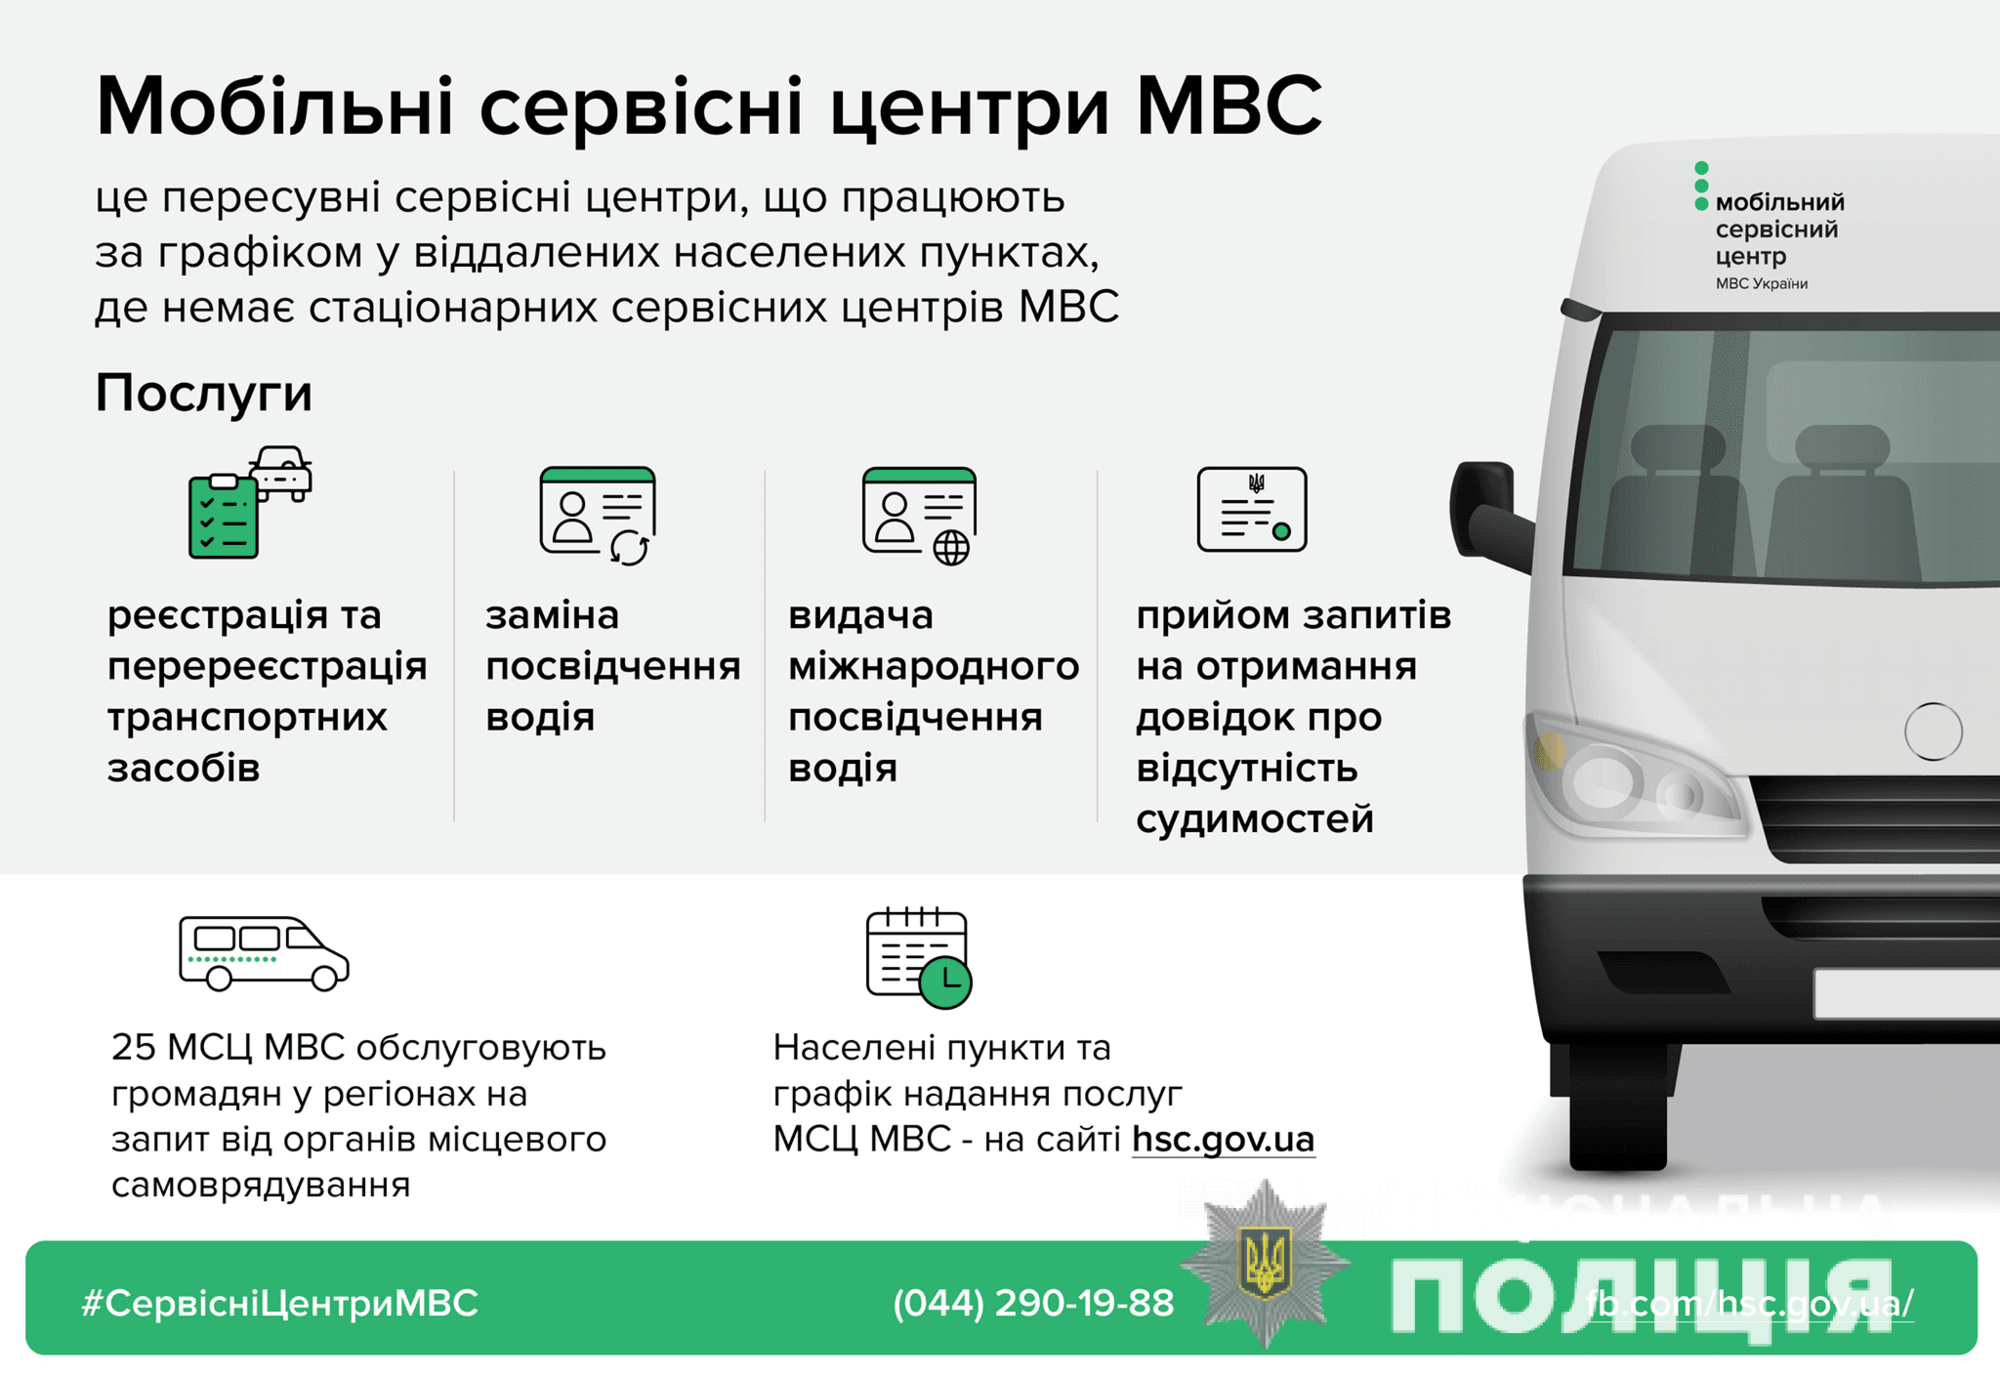 27 серпня мобільний сервісний центр МВС надаватиме послуги в Любашівці